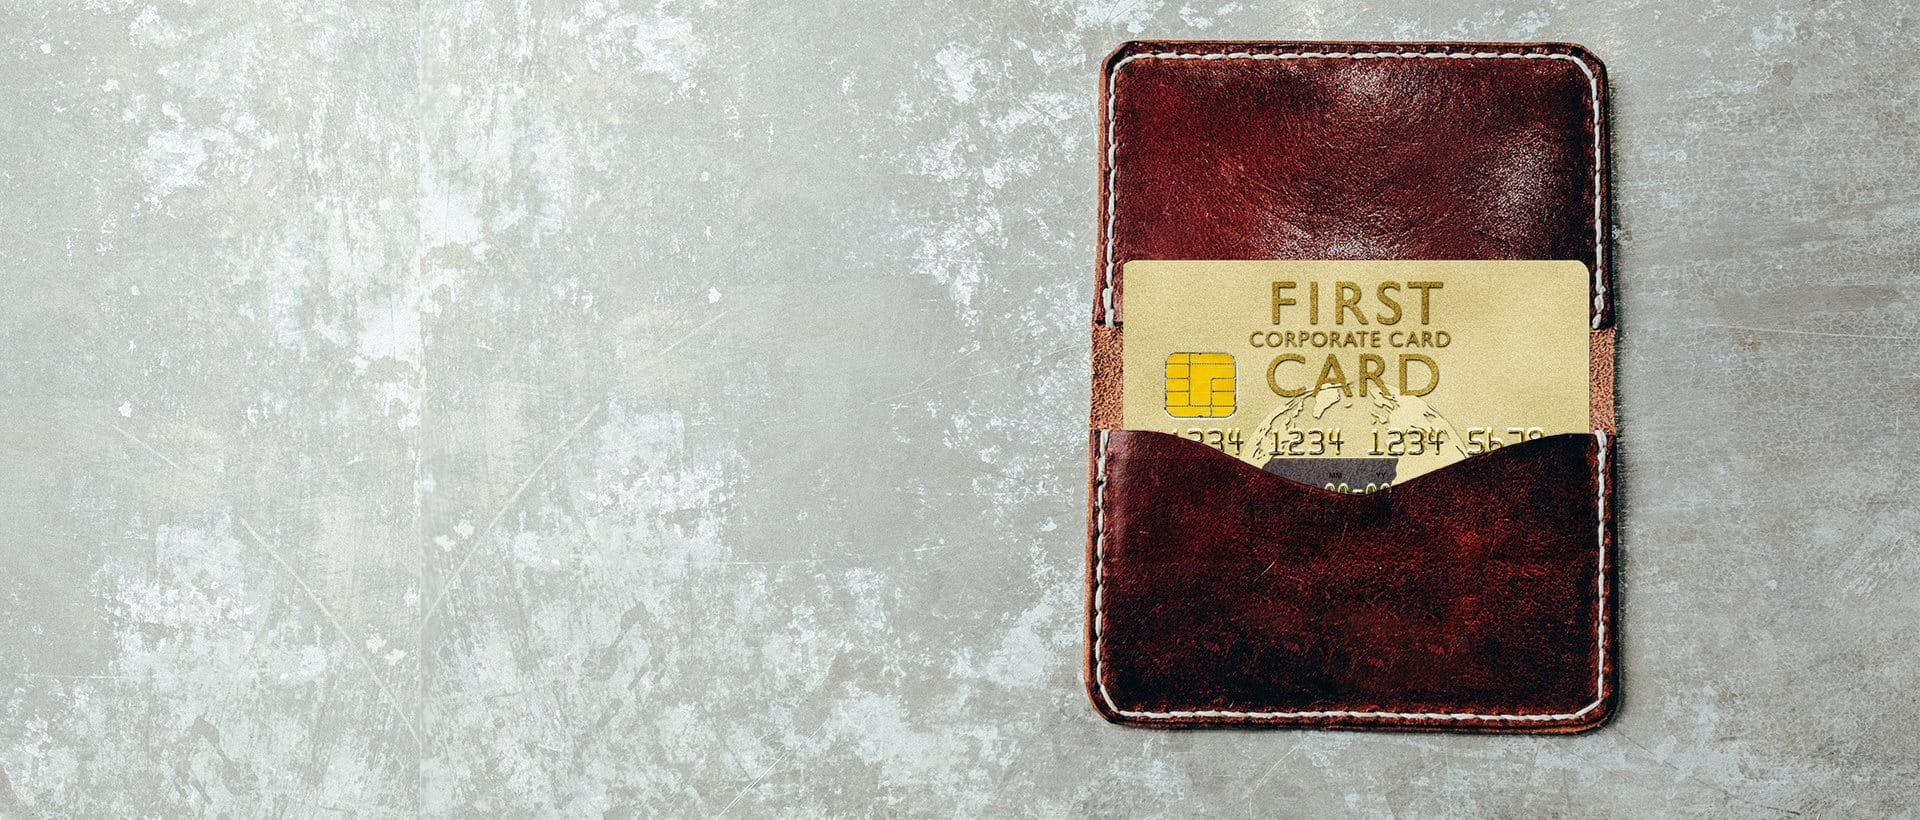 Billiga kreditkort med First Card genom Visma Advantage